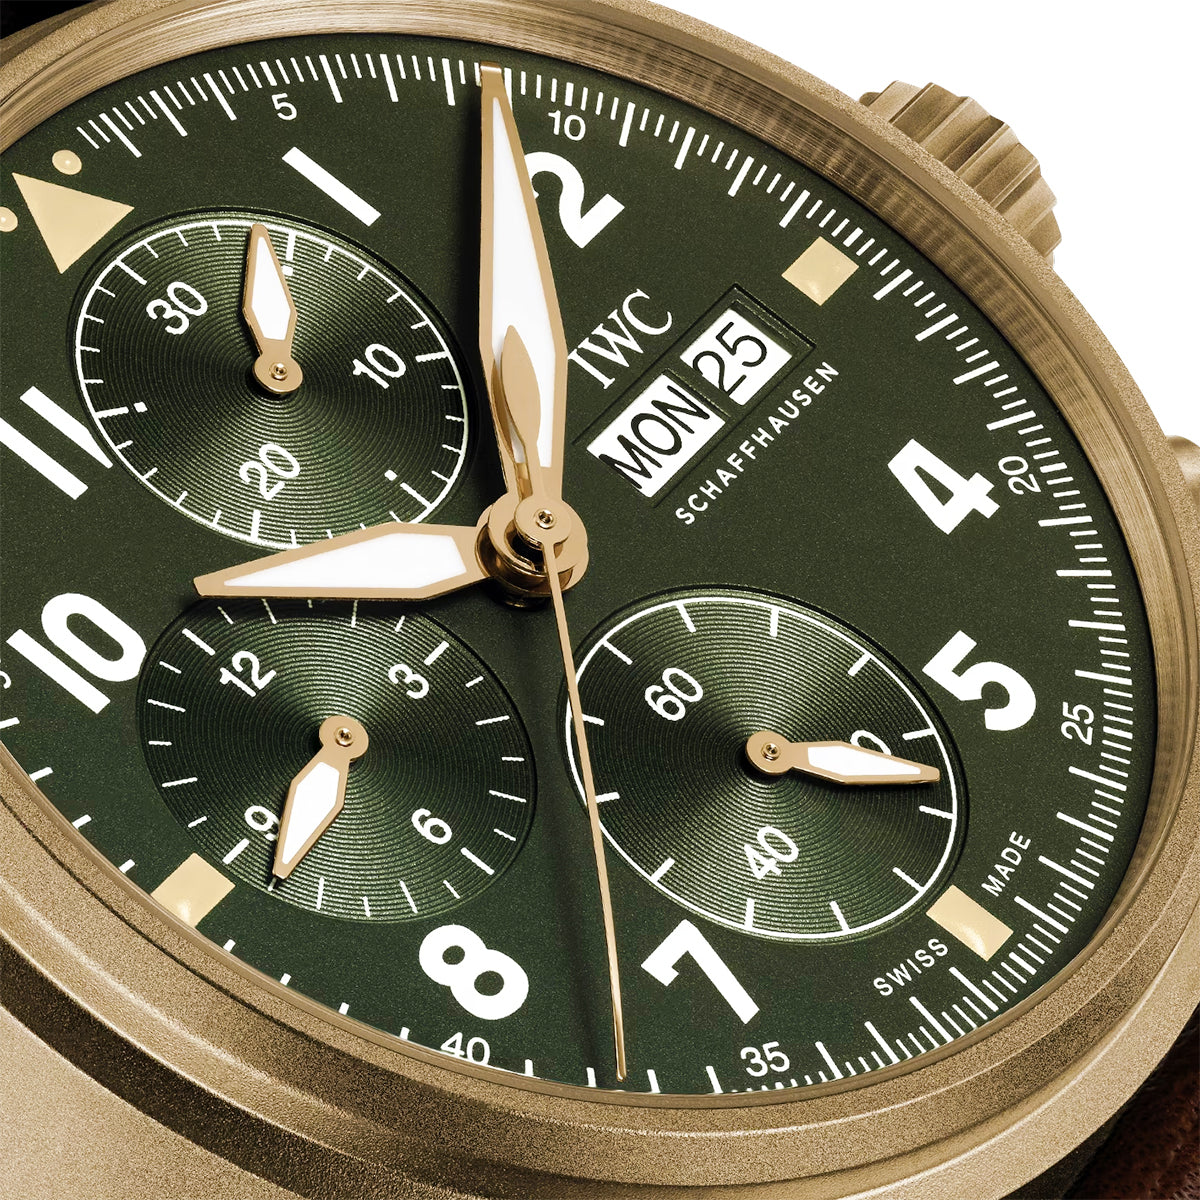 Pilot's Spitfire Bronze 41mm Green Dial Men's Chronograph Watch